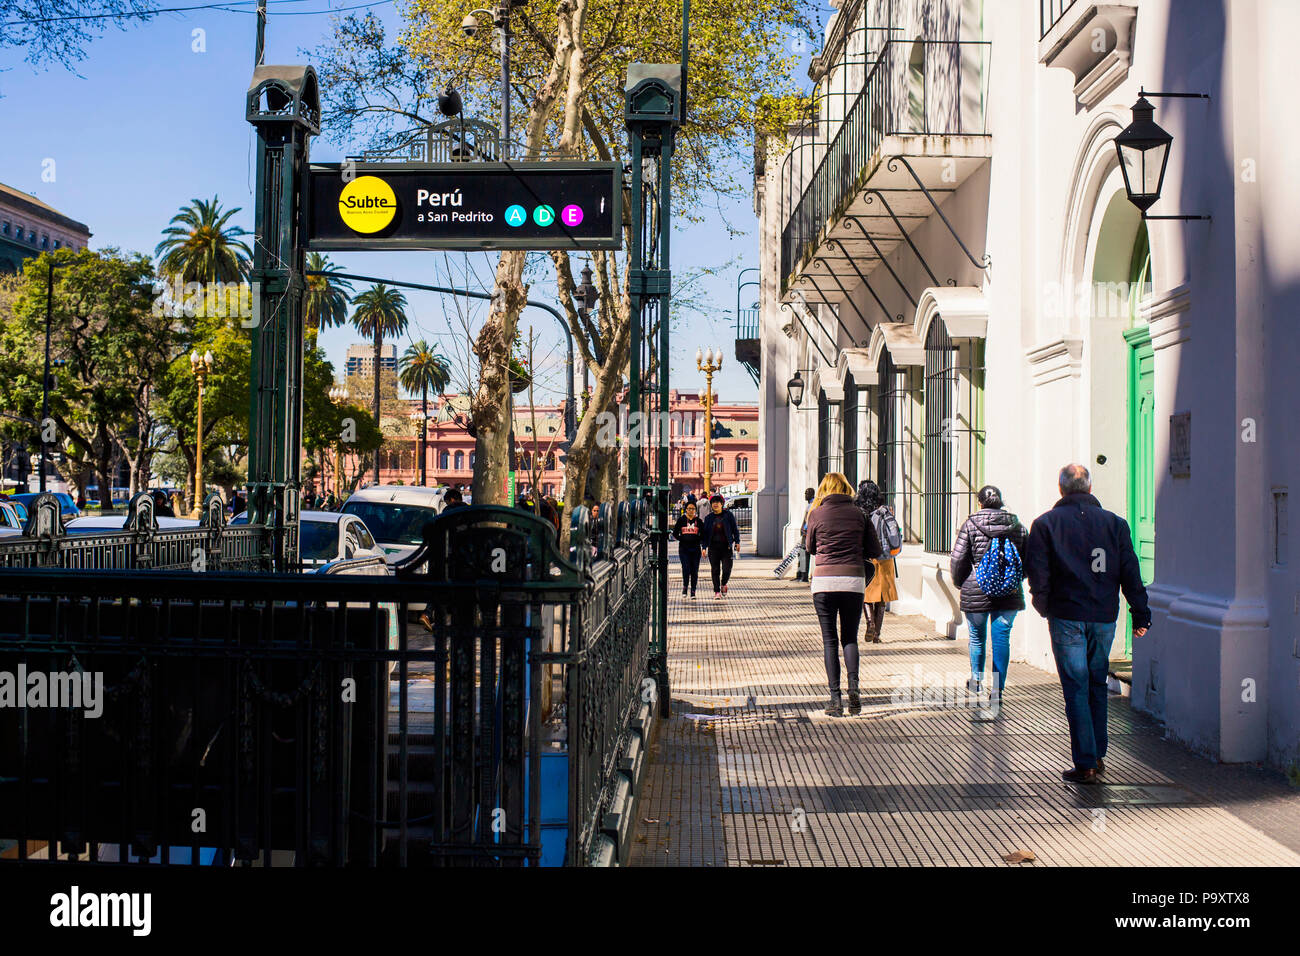 Eingang der Subte Metro und Fußgänger zu Fuß auf der Straße in Buenos Aires, Argentinien Stockfoto